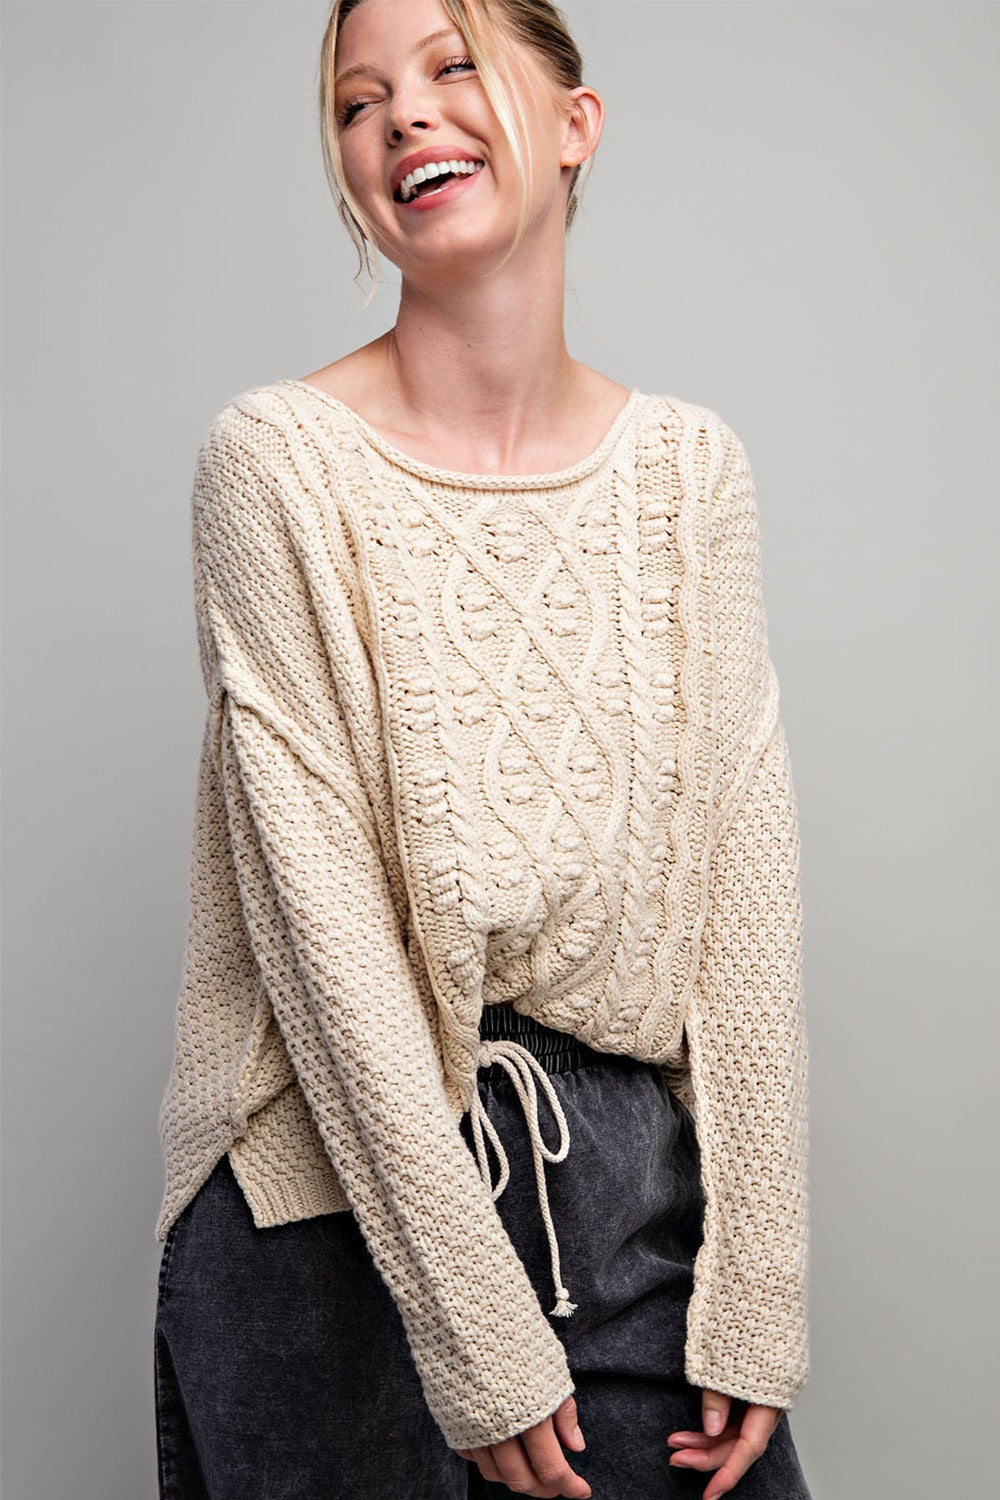 Rachel Knit Sweater